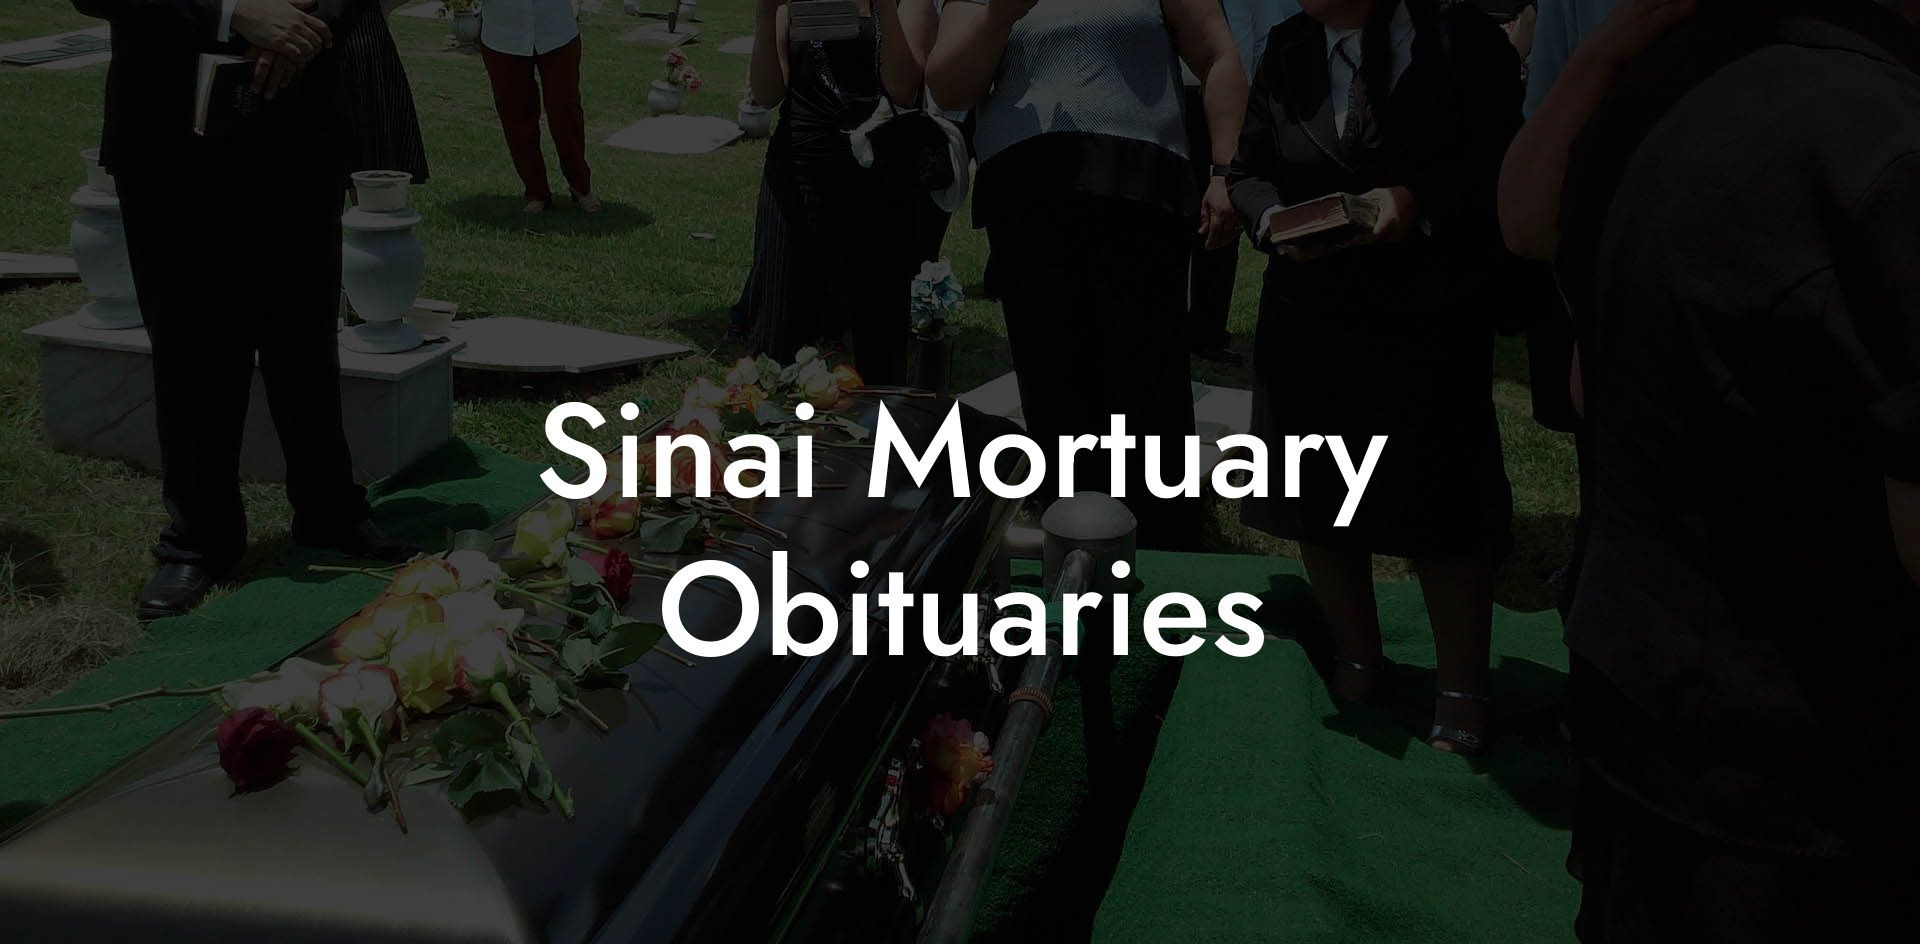 Sinai Mortuary Obituaries